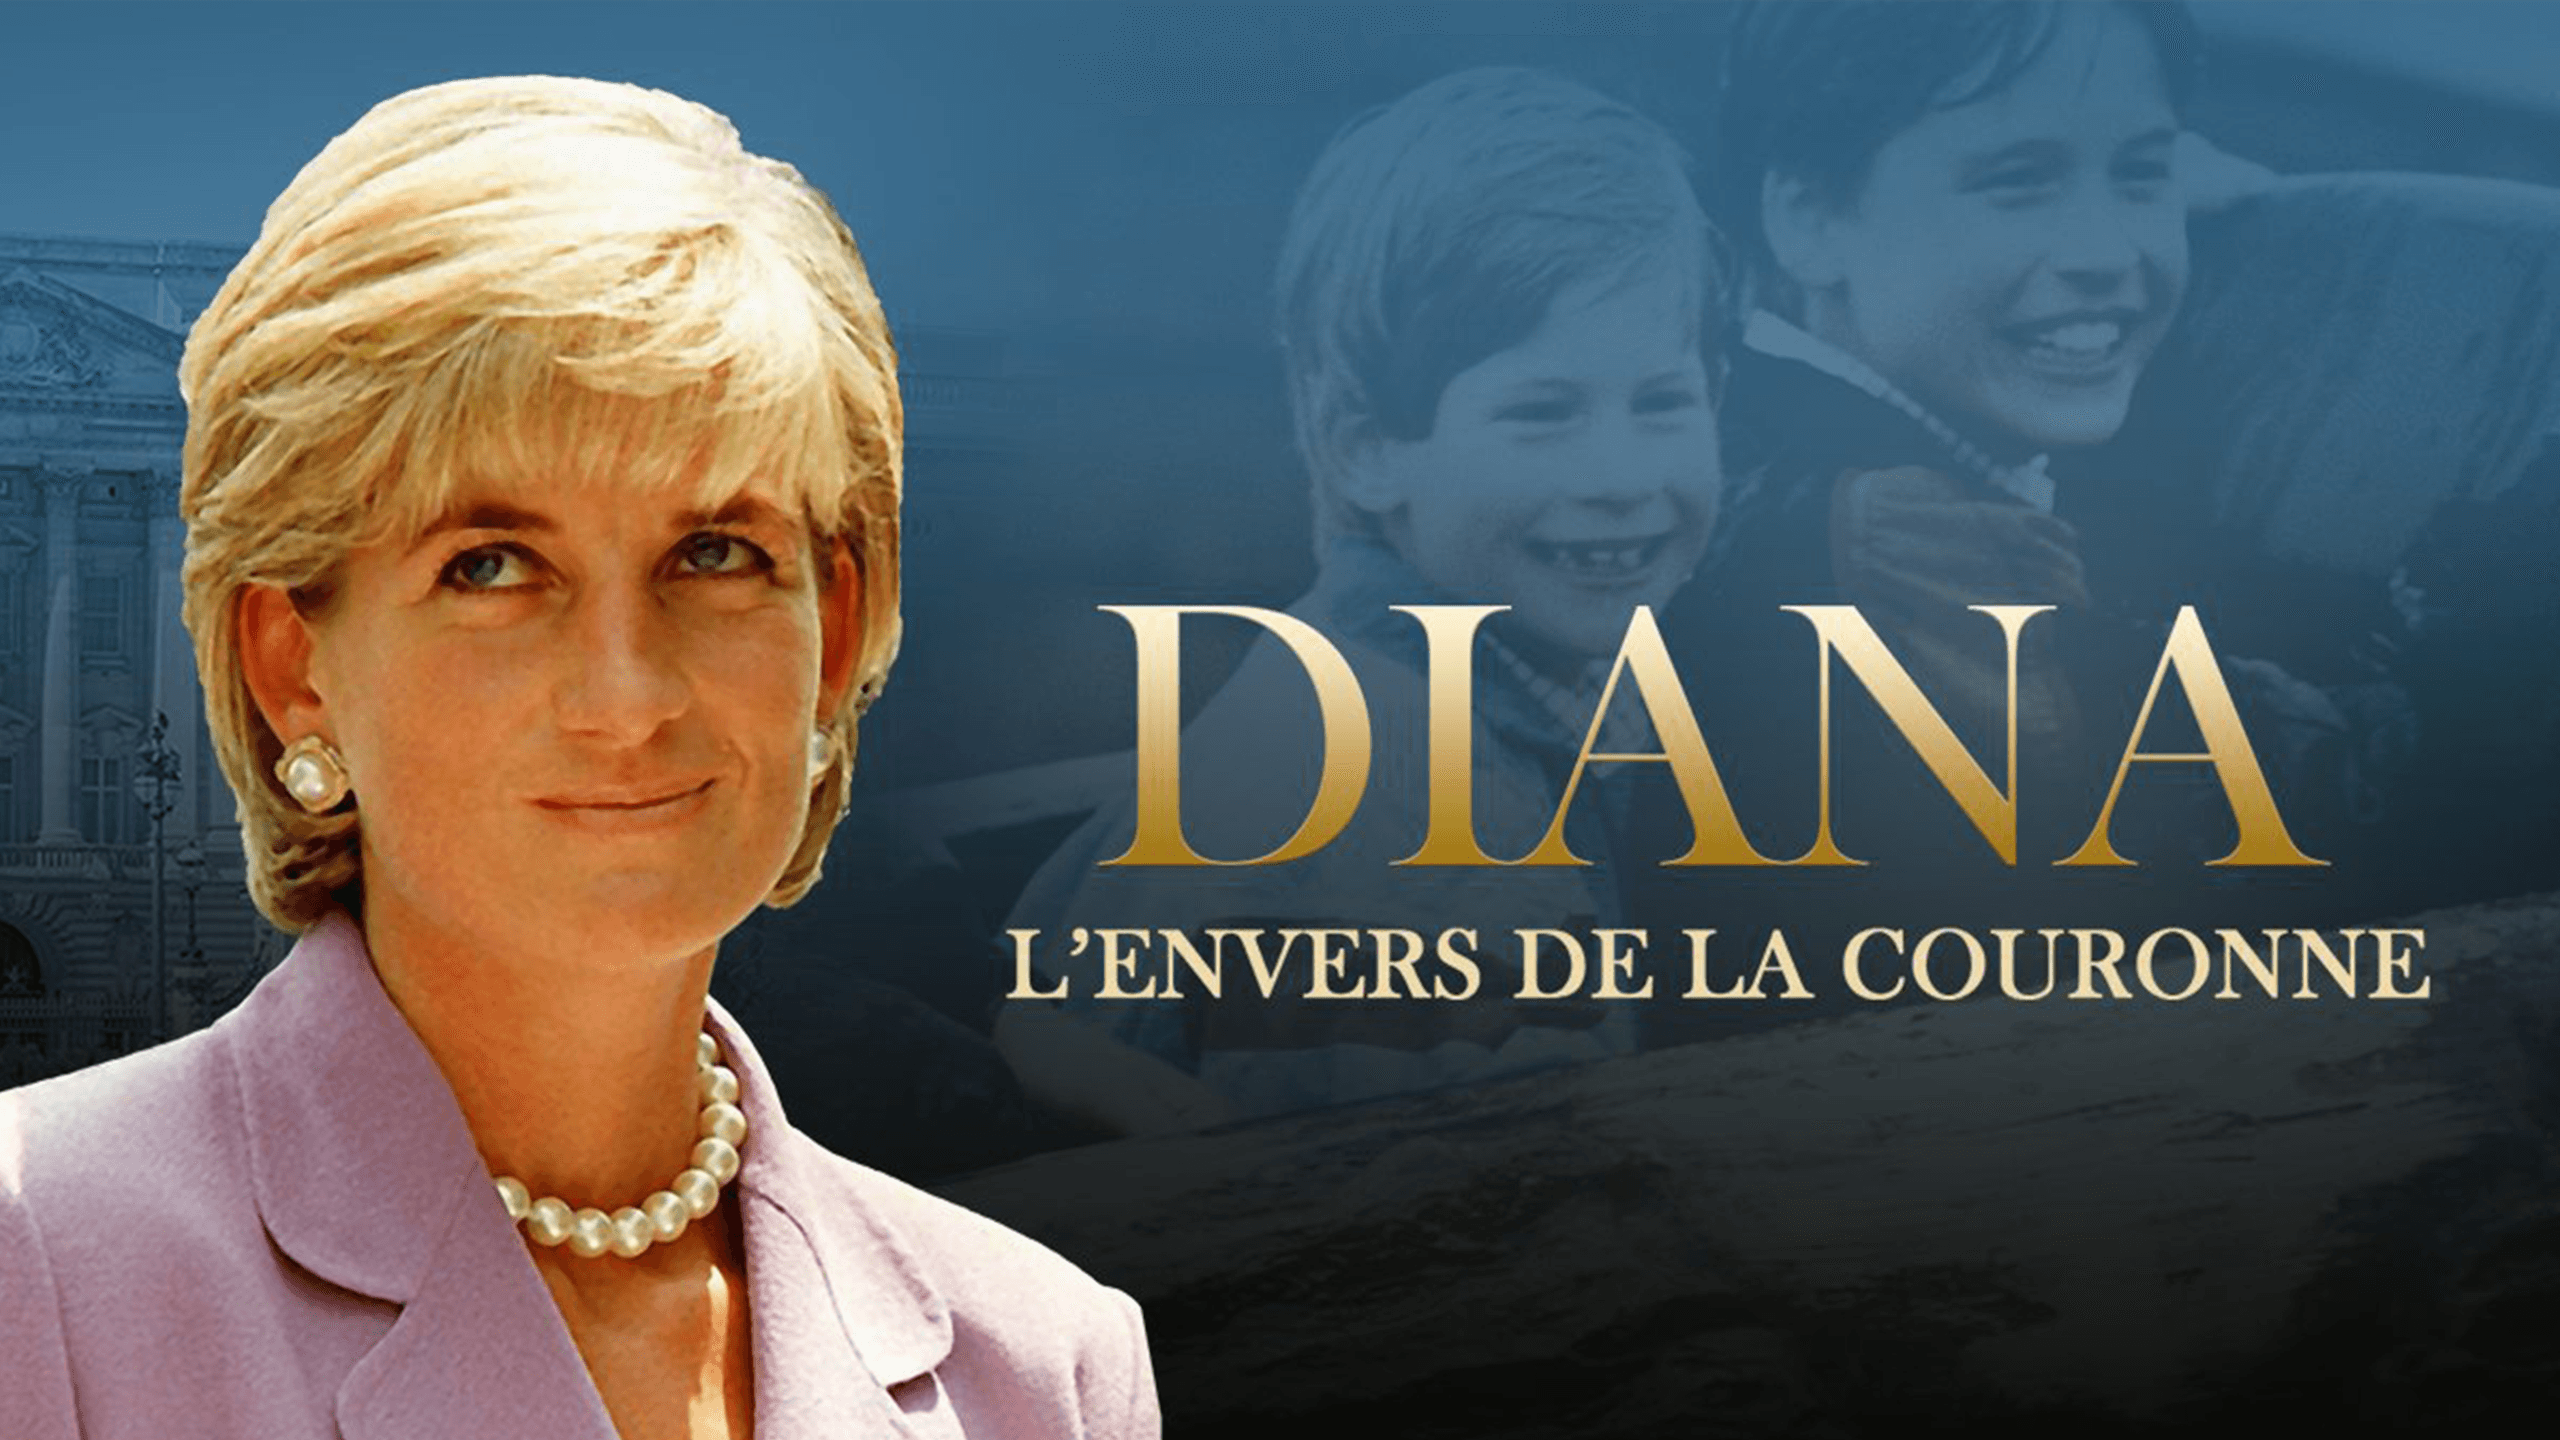 Diana, L'envers de la couronne